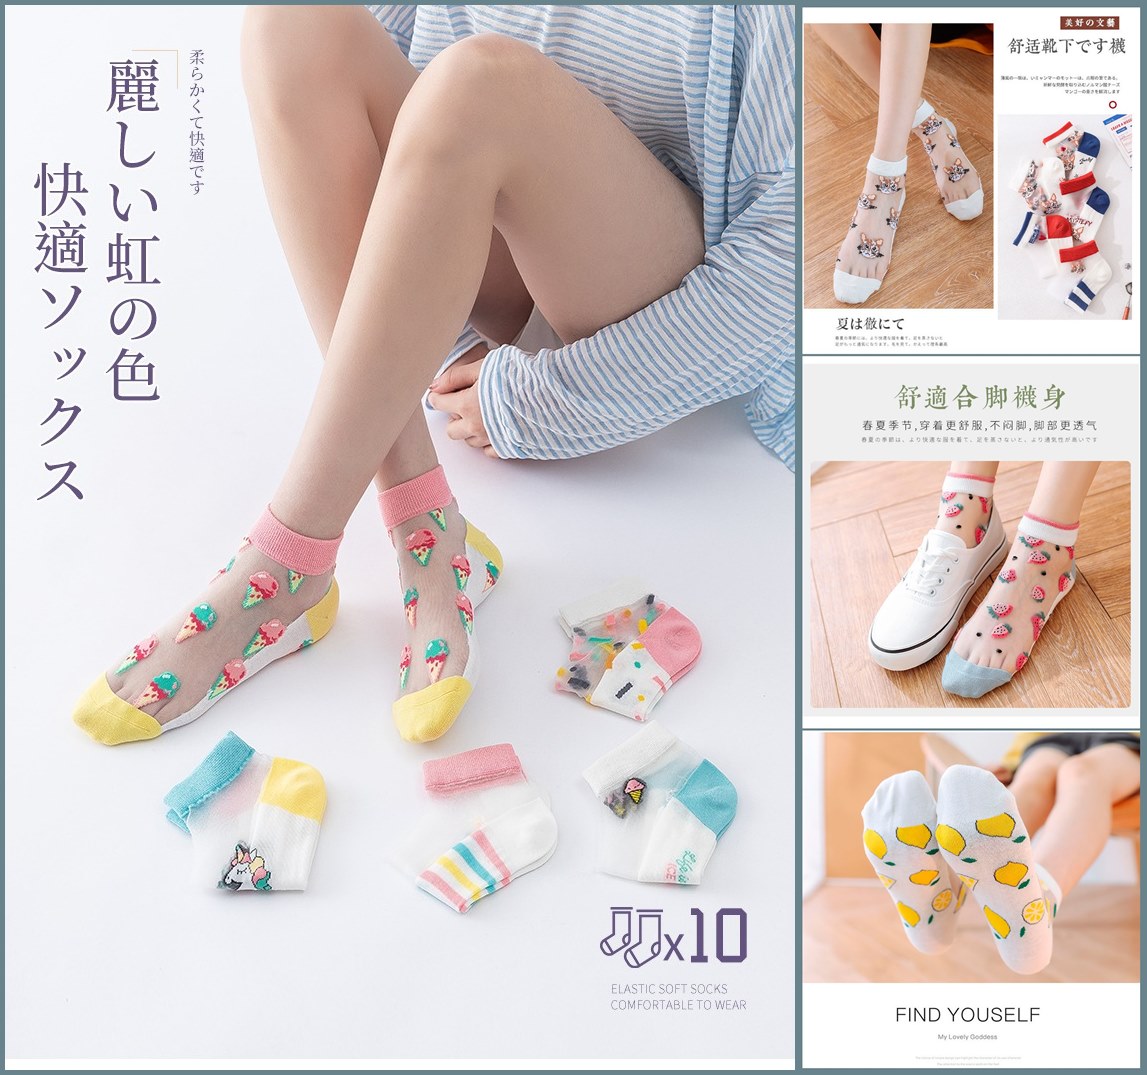 FB4344 繽紛夏季可愛系列水晶絲短襪 (一組10雙入)